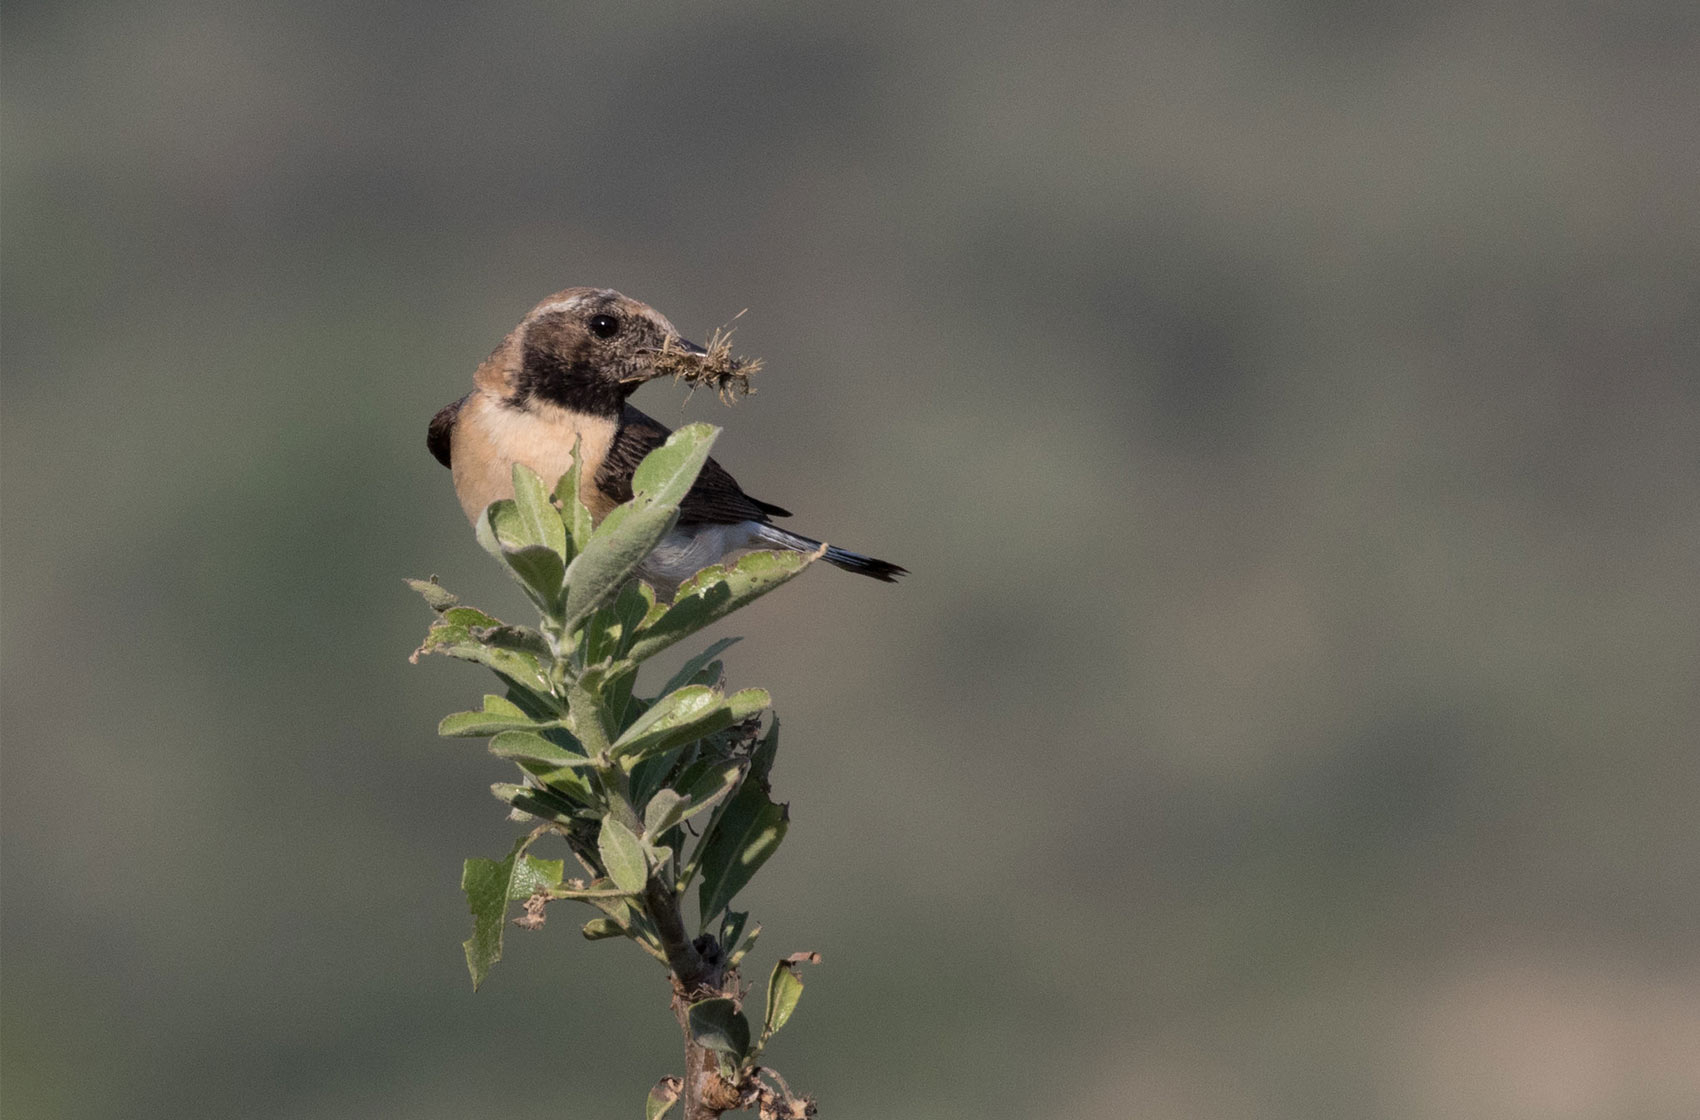 Traquet oreillard (Oenanthe hispanica), un passereau dont la population est en déclin, classé “En danger” en France - Photo credit: adrien2008 on Visualhunt / CC BY-NC-ND